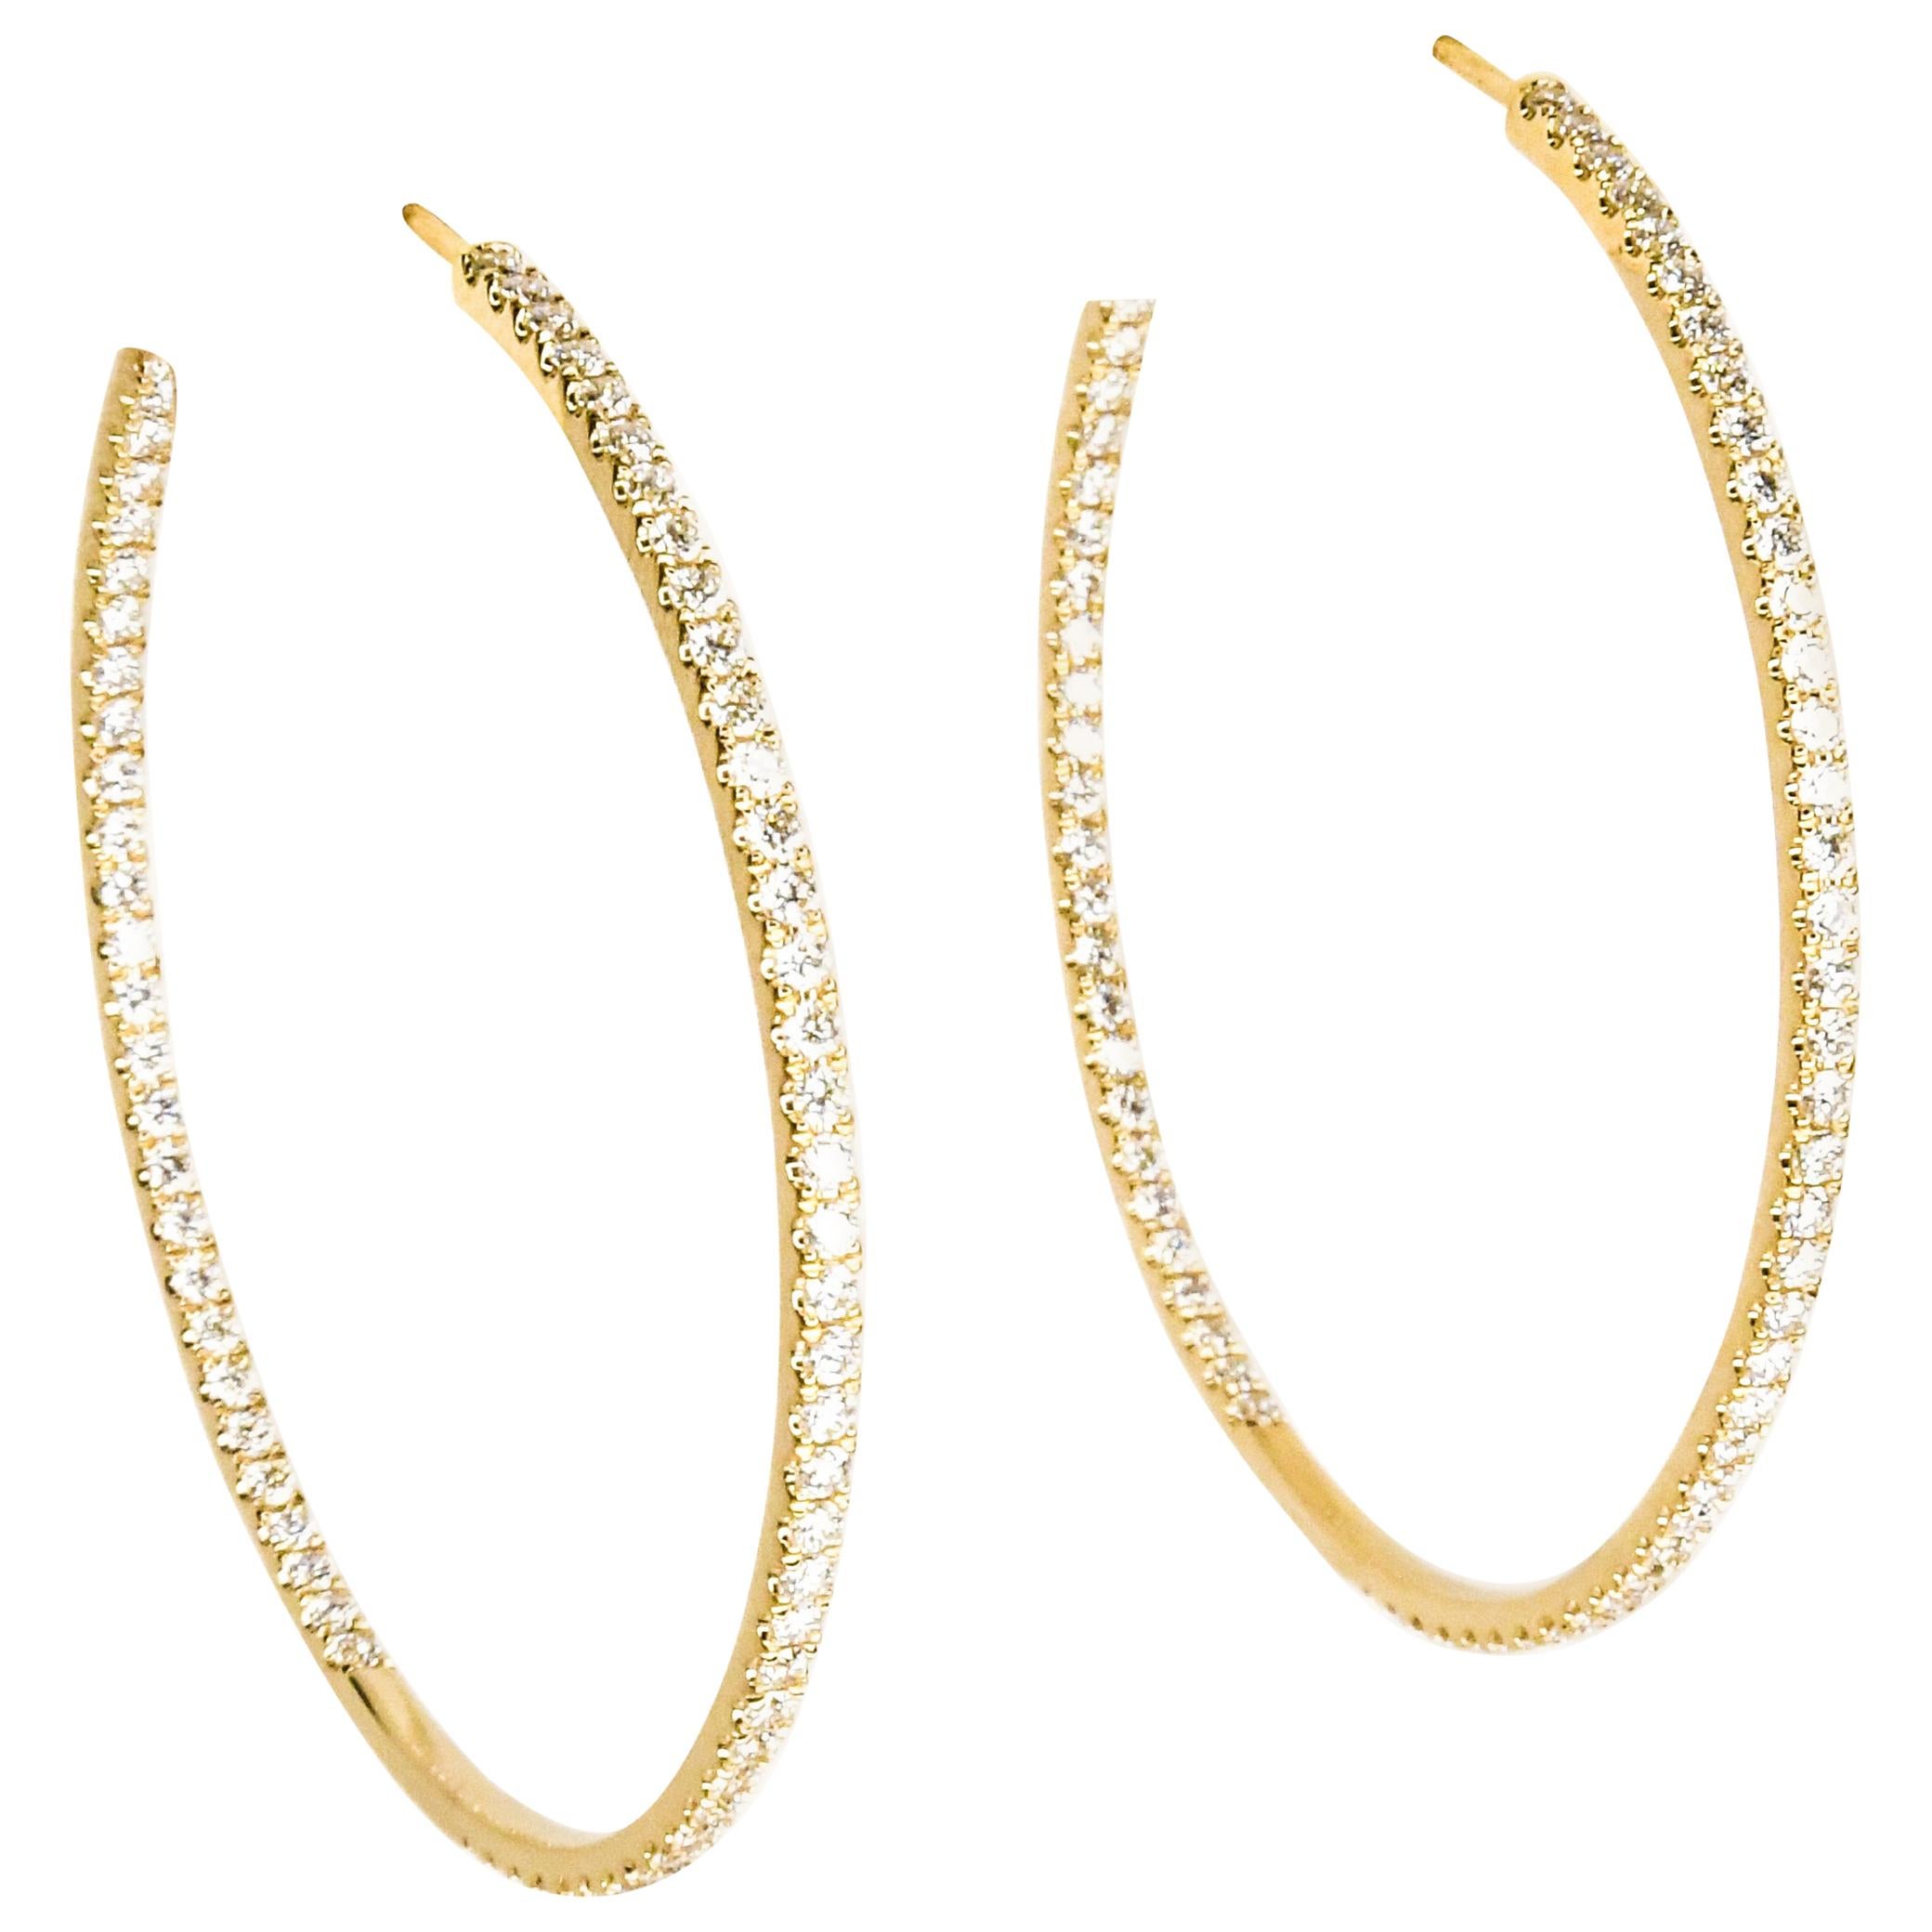 18 Karat Yellow Gold Inside Outside Diamond Pave Hoop Pierced Earrings Brand New For Sale